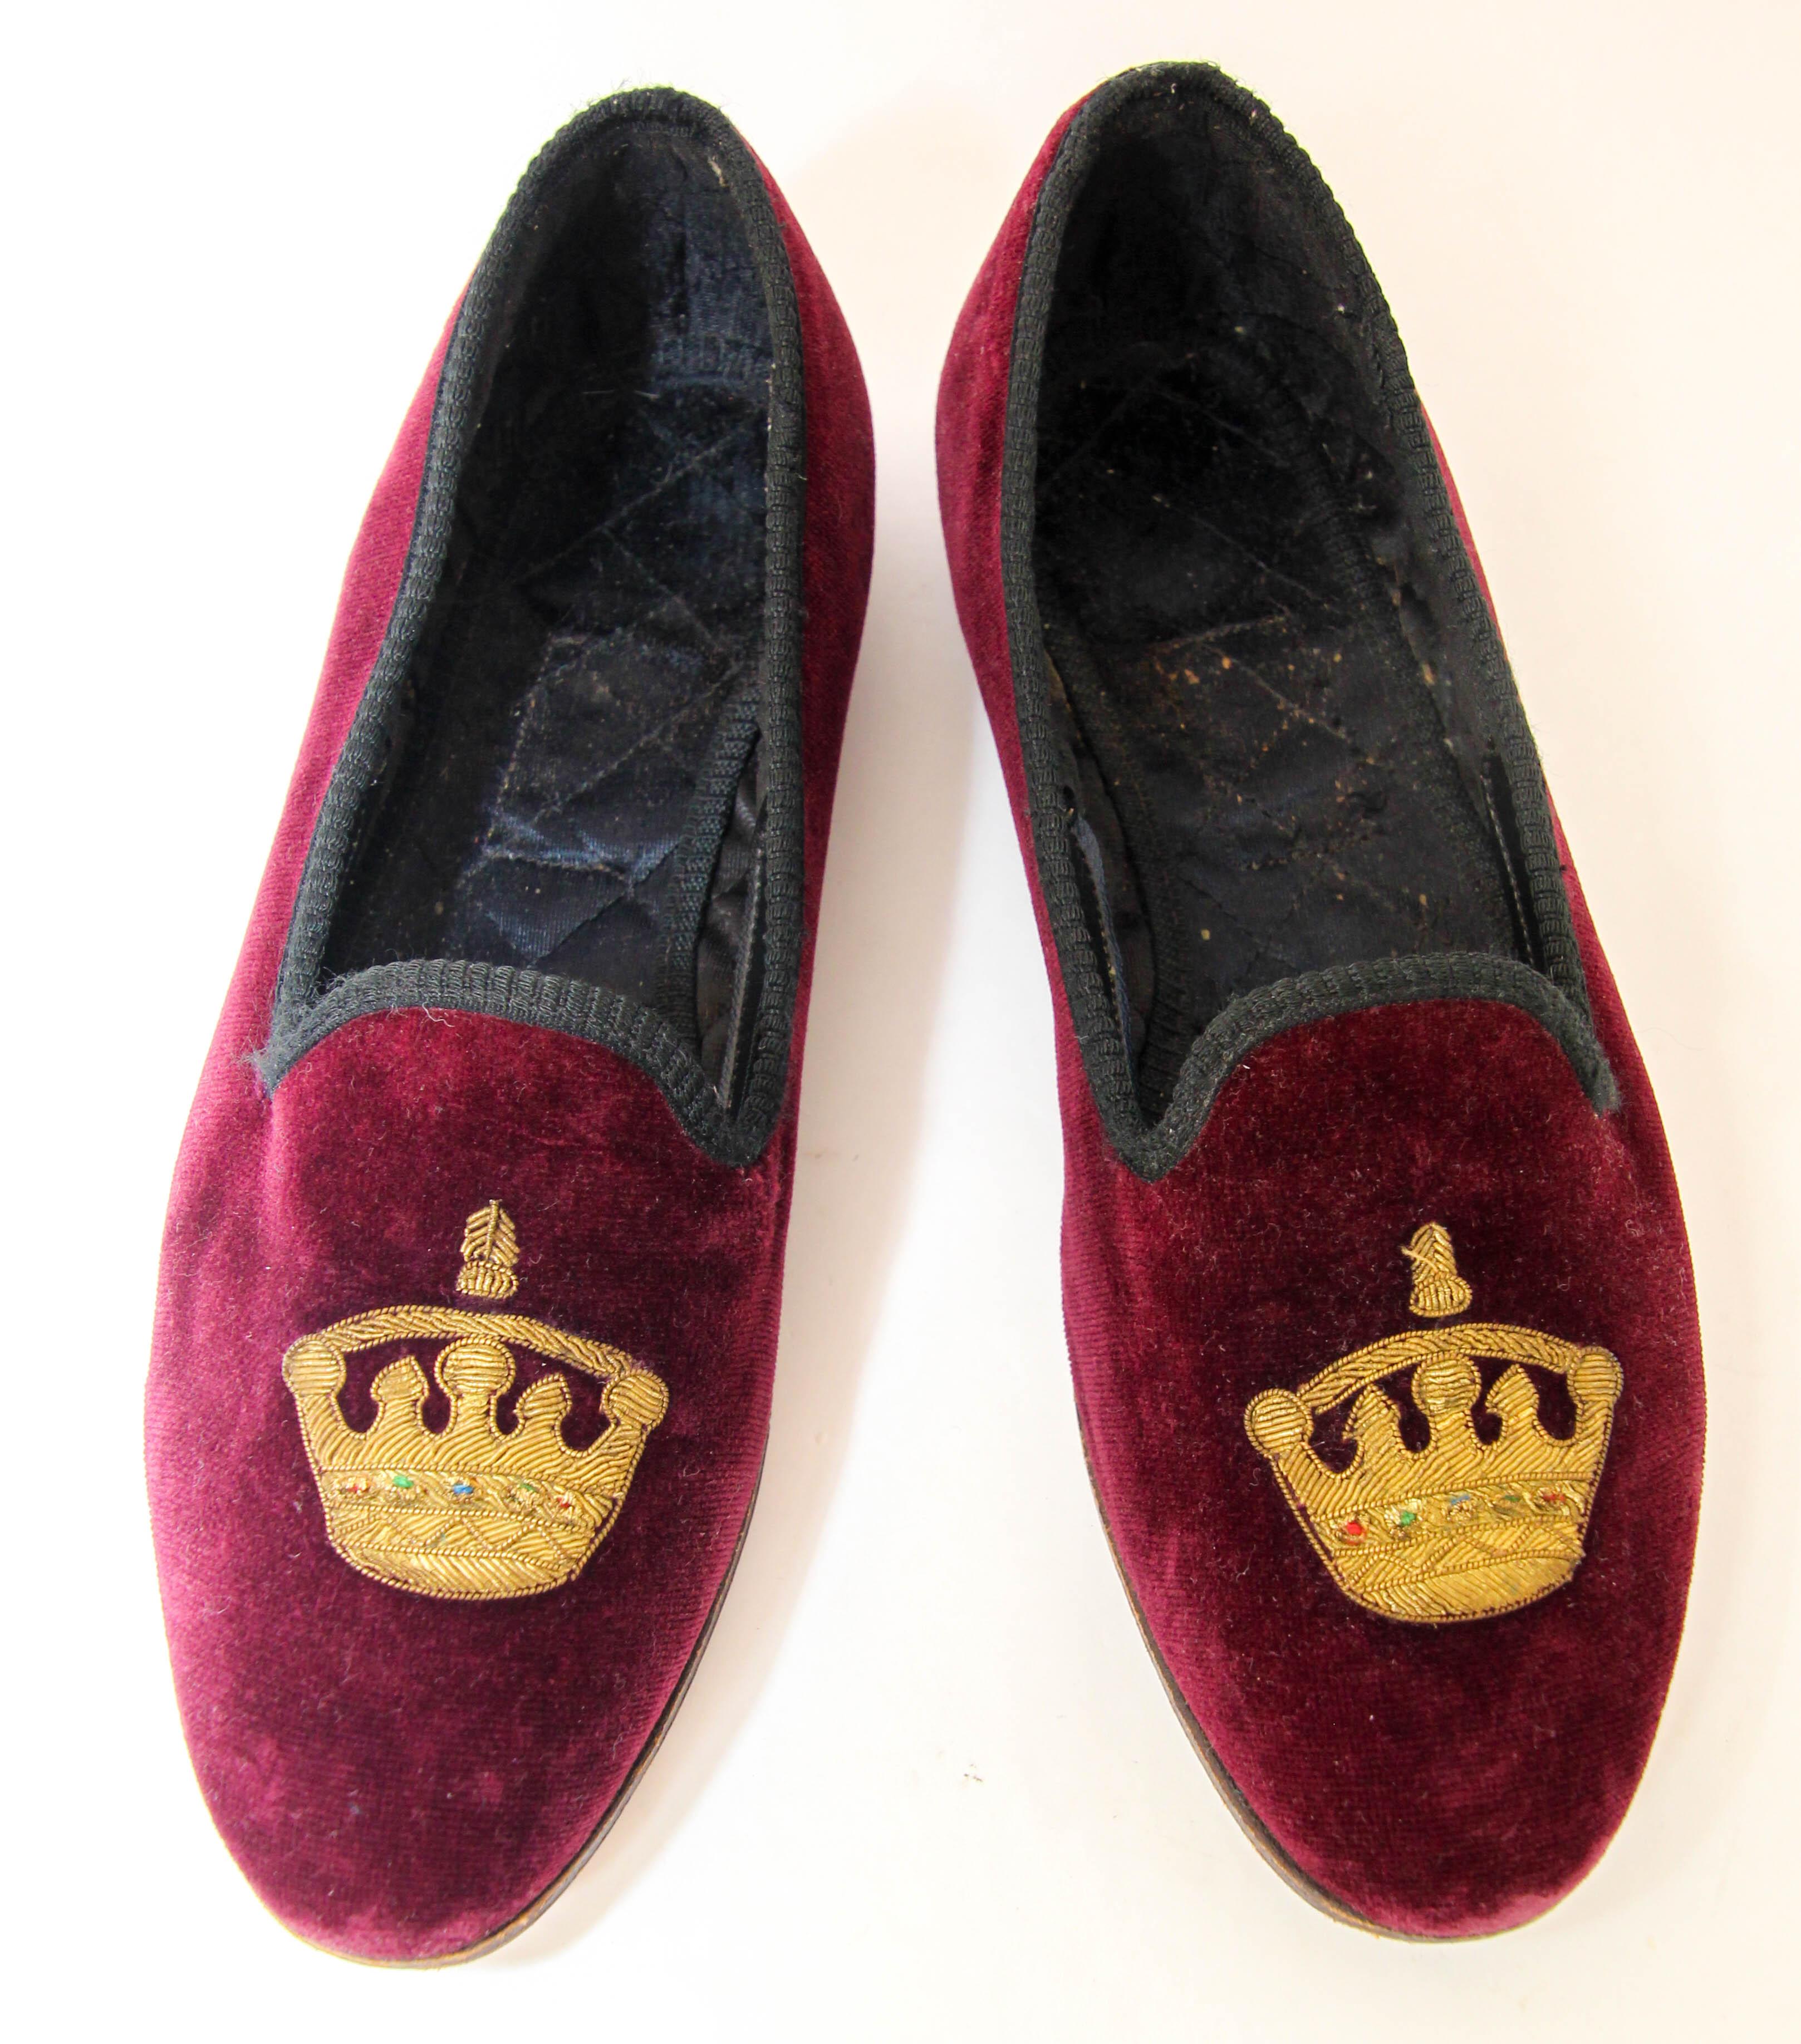 Vintage couronne britannique fait à la main en Angleterre Velours Pantoufles Taille 6,5.
Chaussures unisexes de luxe faites à la main, mocassins oxford en velours, mocassins en velours à semelle de cuir, aristocratiquement brodés à la main avec une